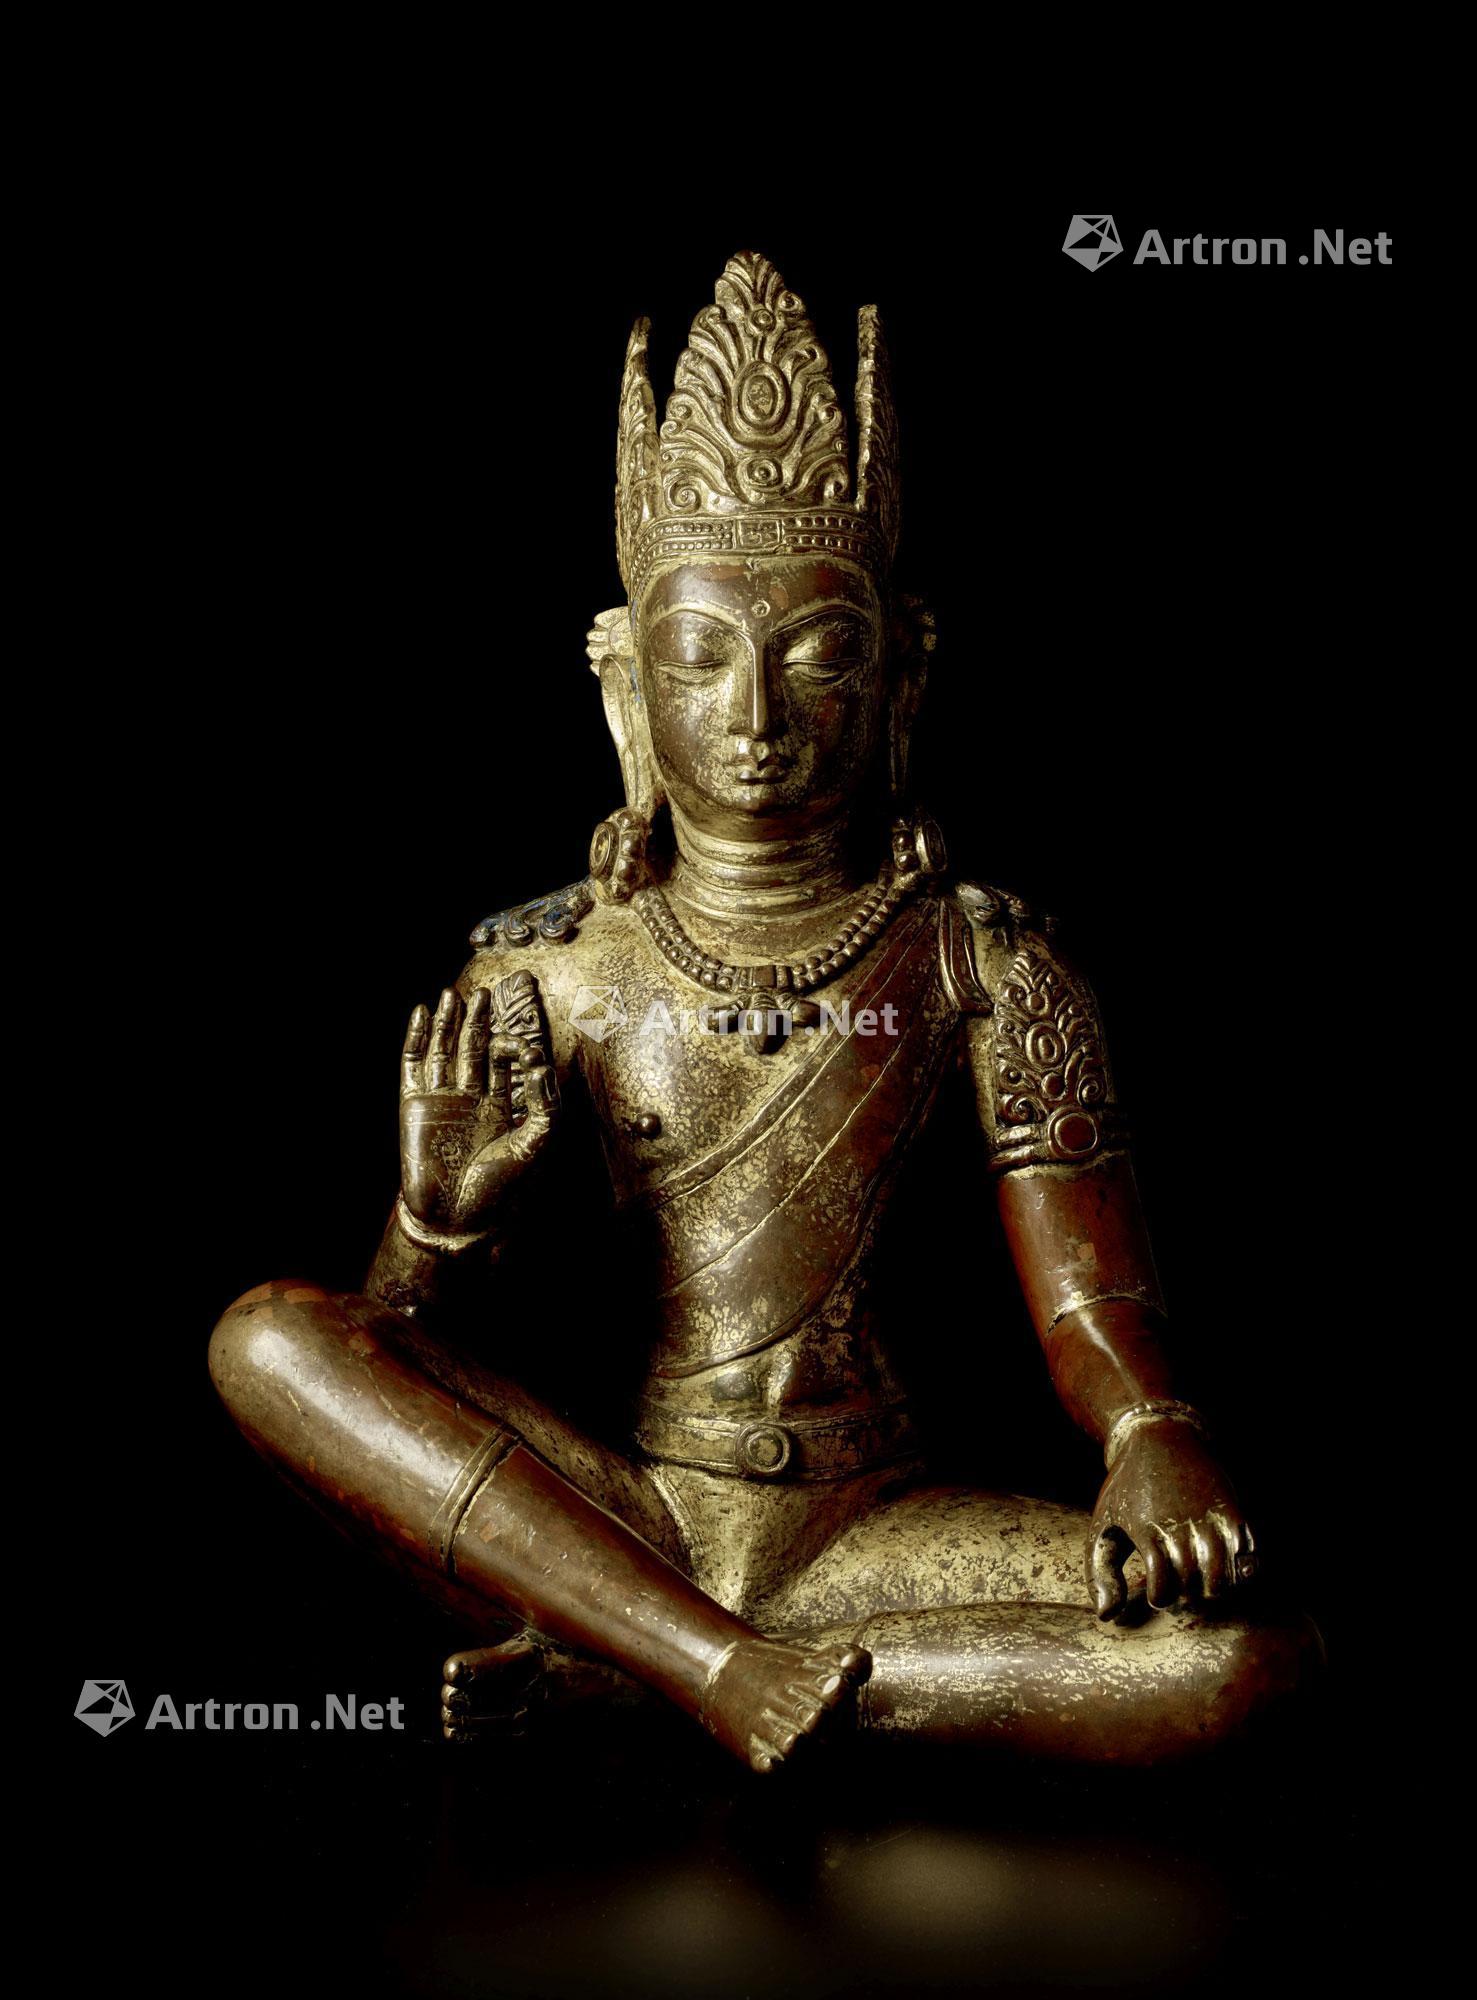 尼泊尔铜佛像的断代图片